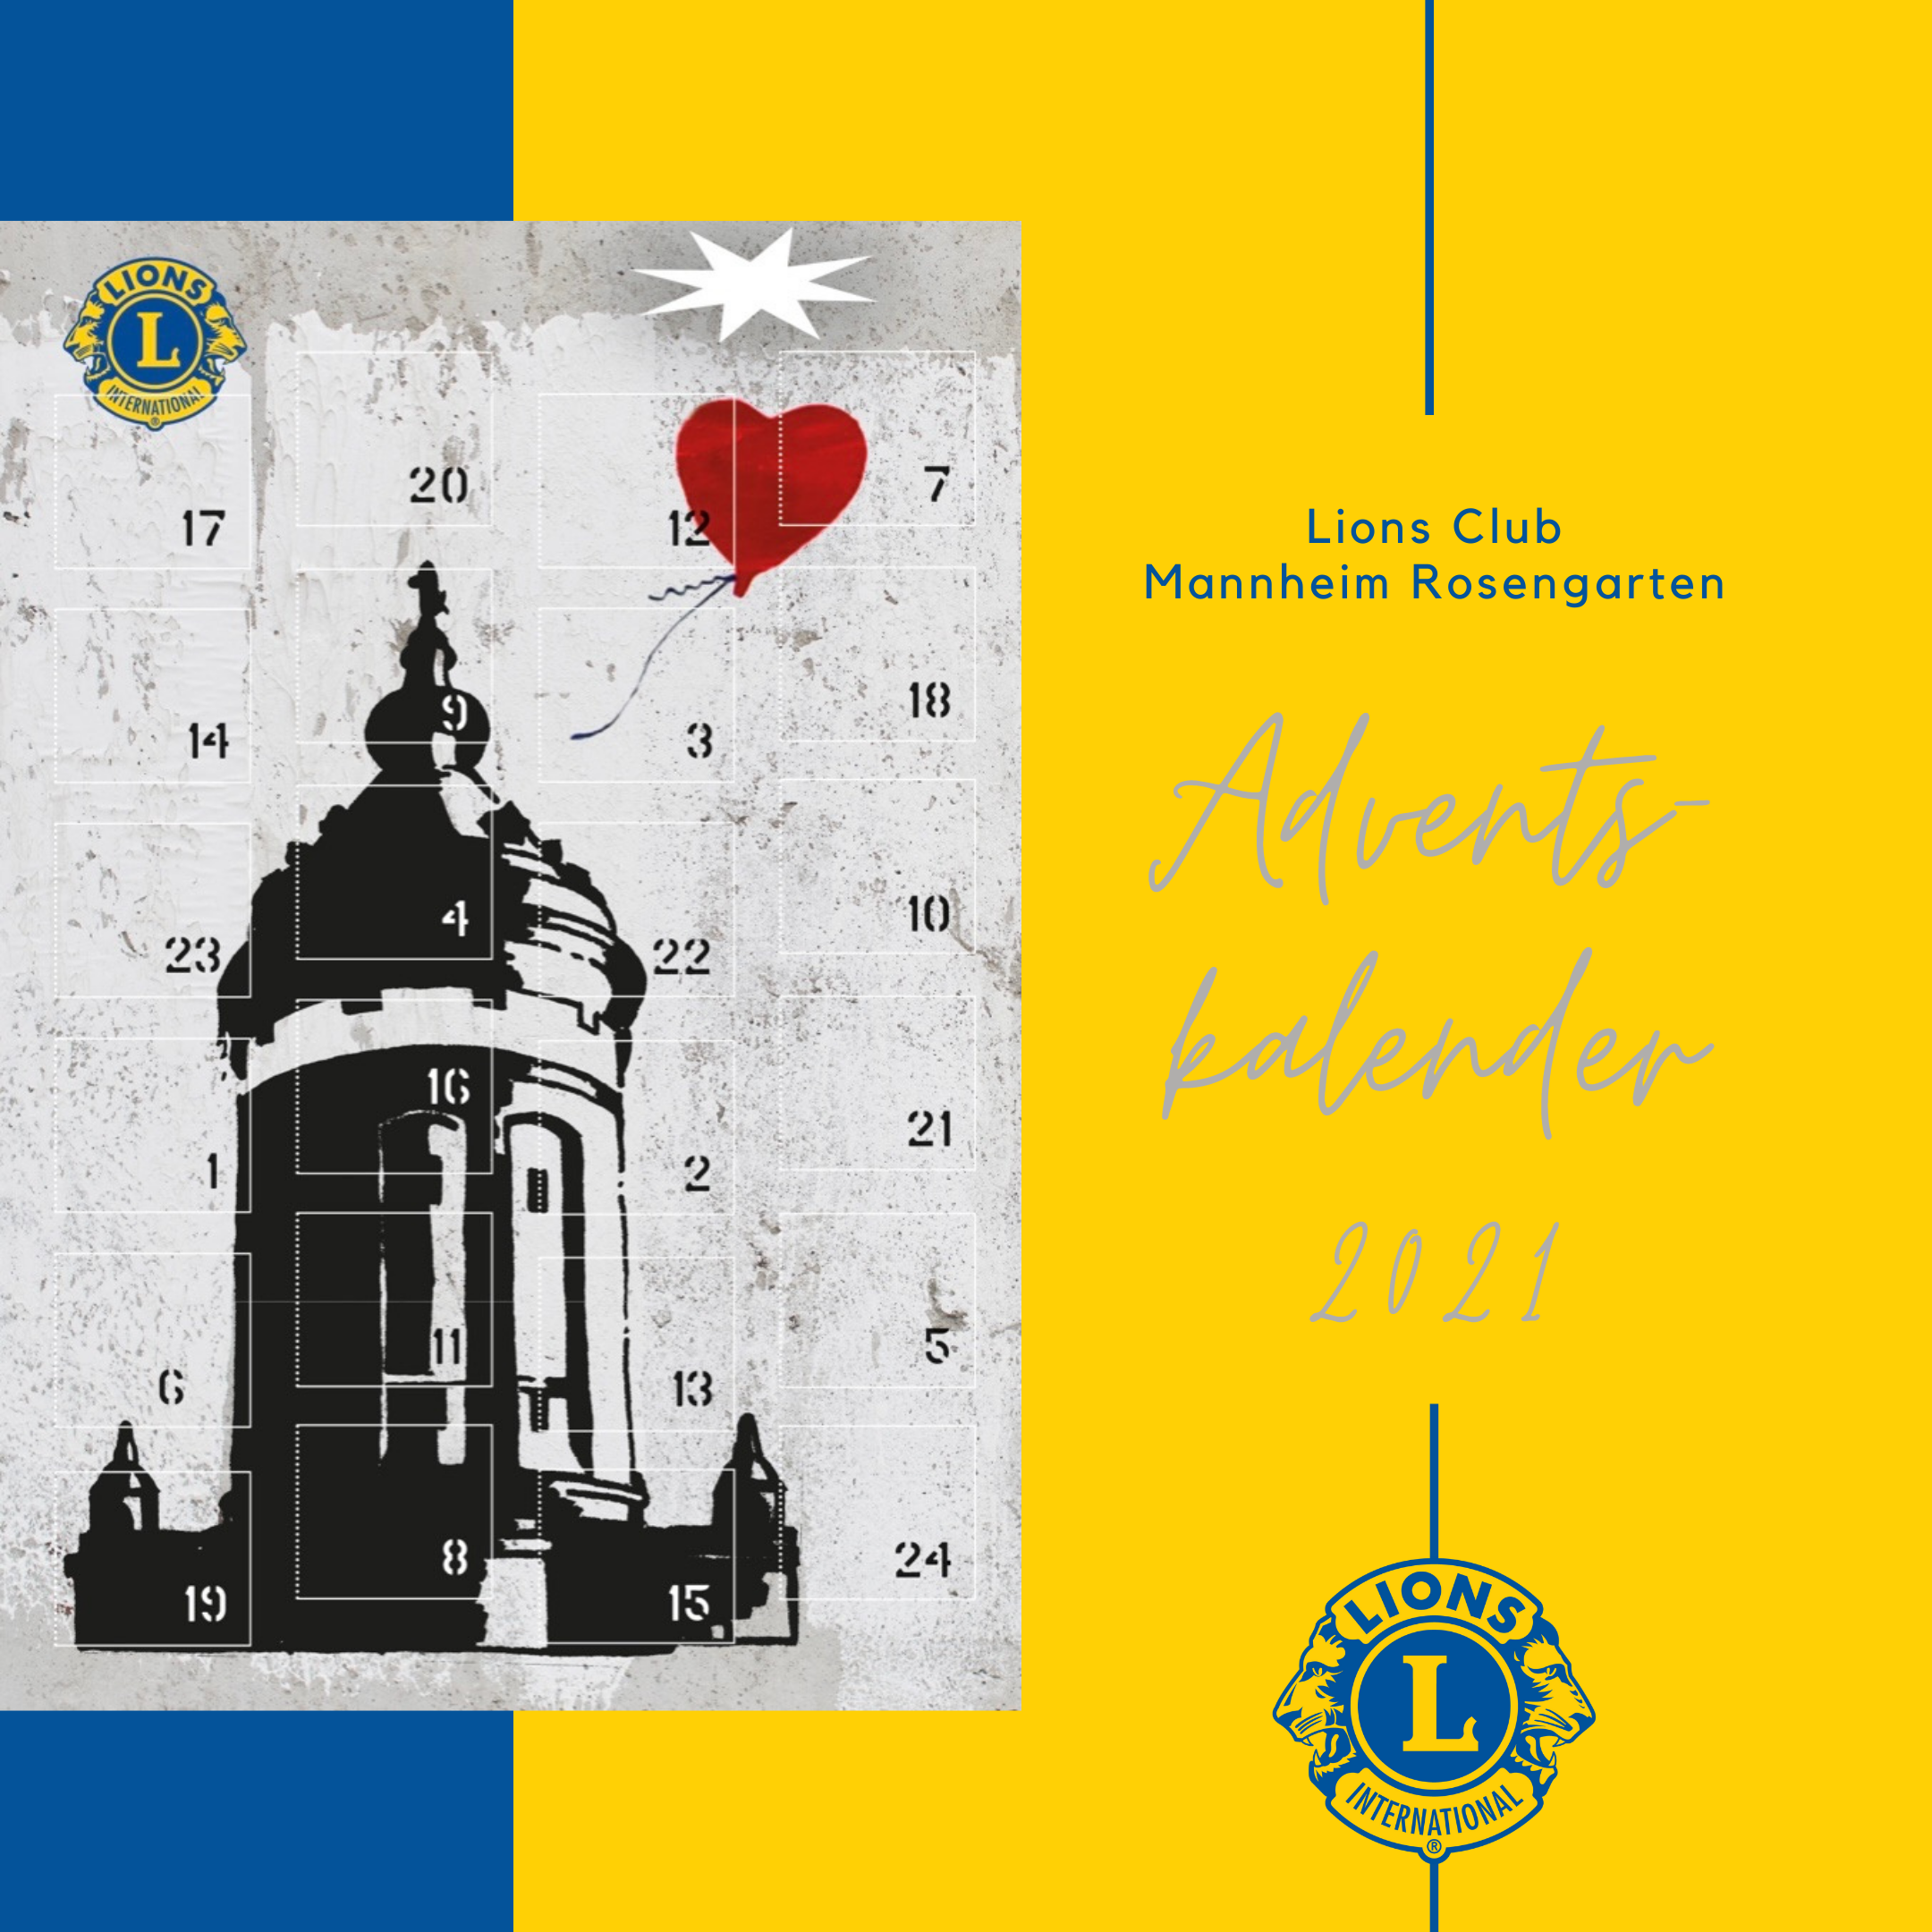 Adventskalender 2021 des Lions Club Mannheim Rosengarten